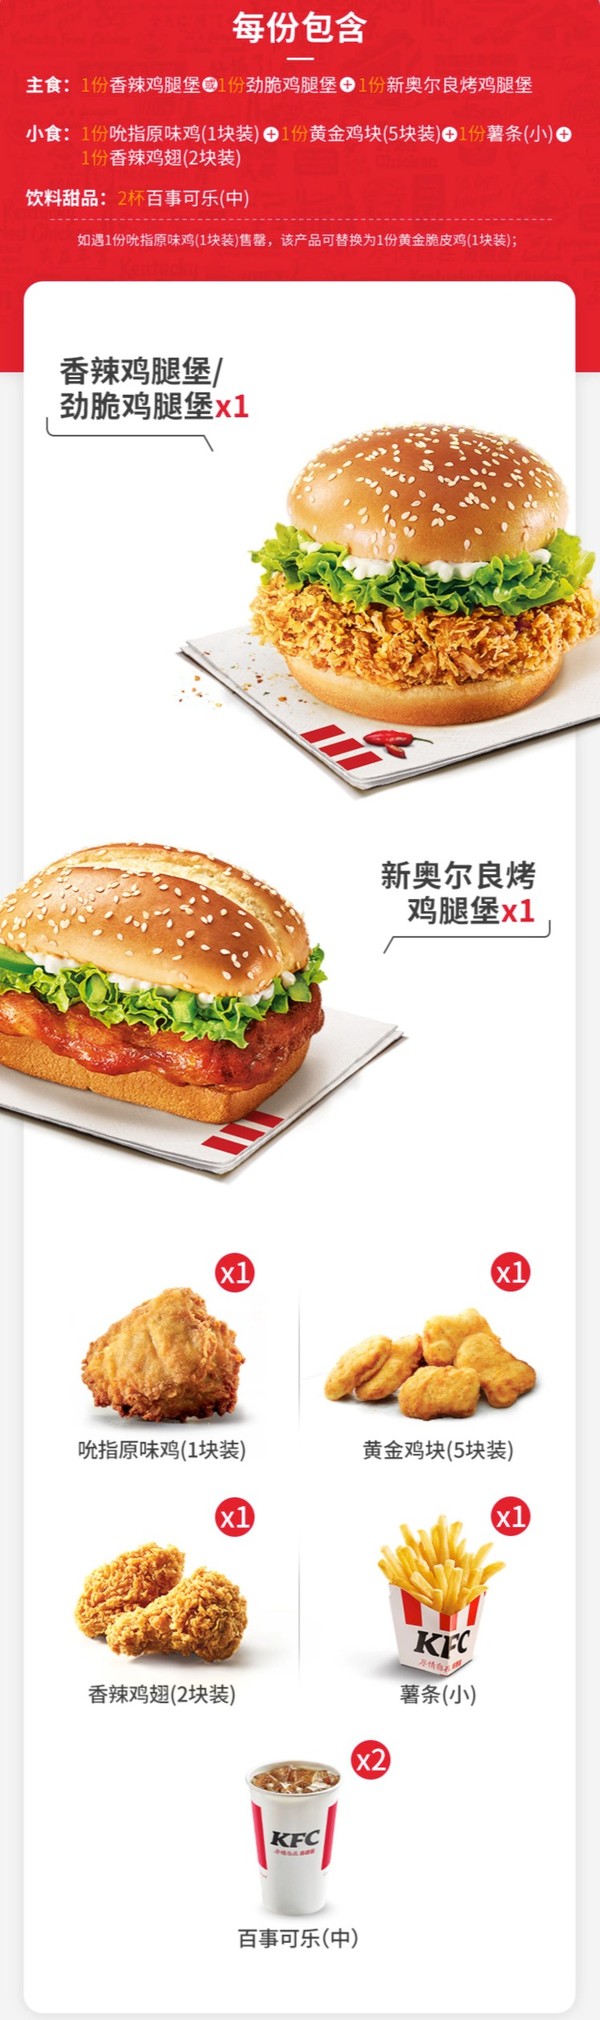 KFC 肯德基 堡堡满足双人餐兑换券